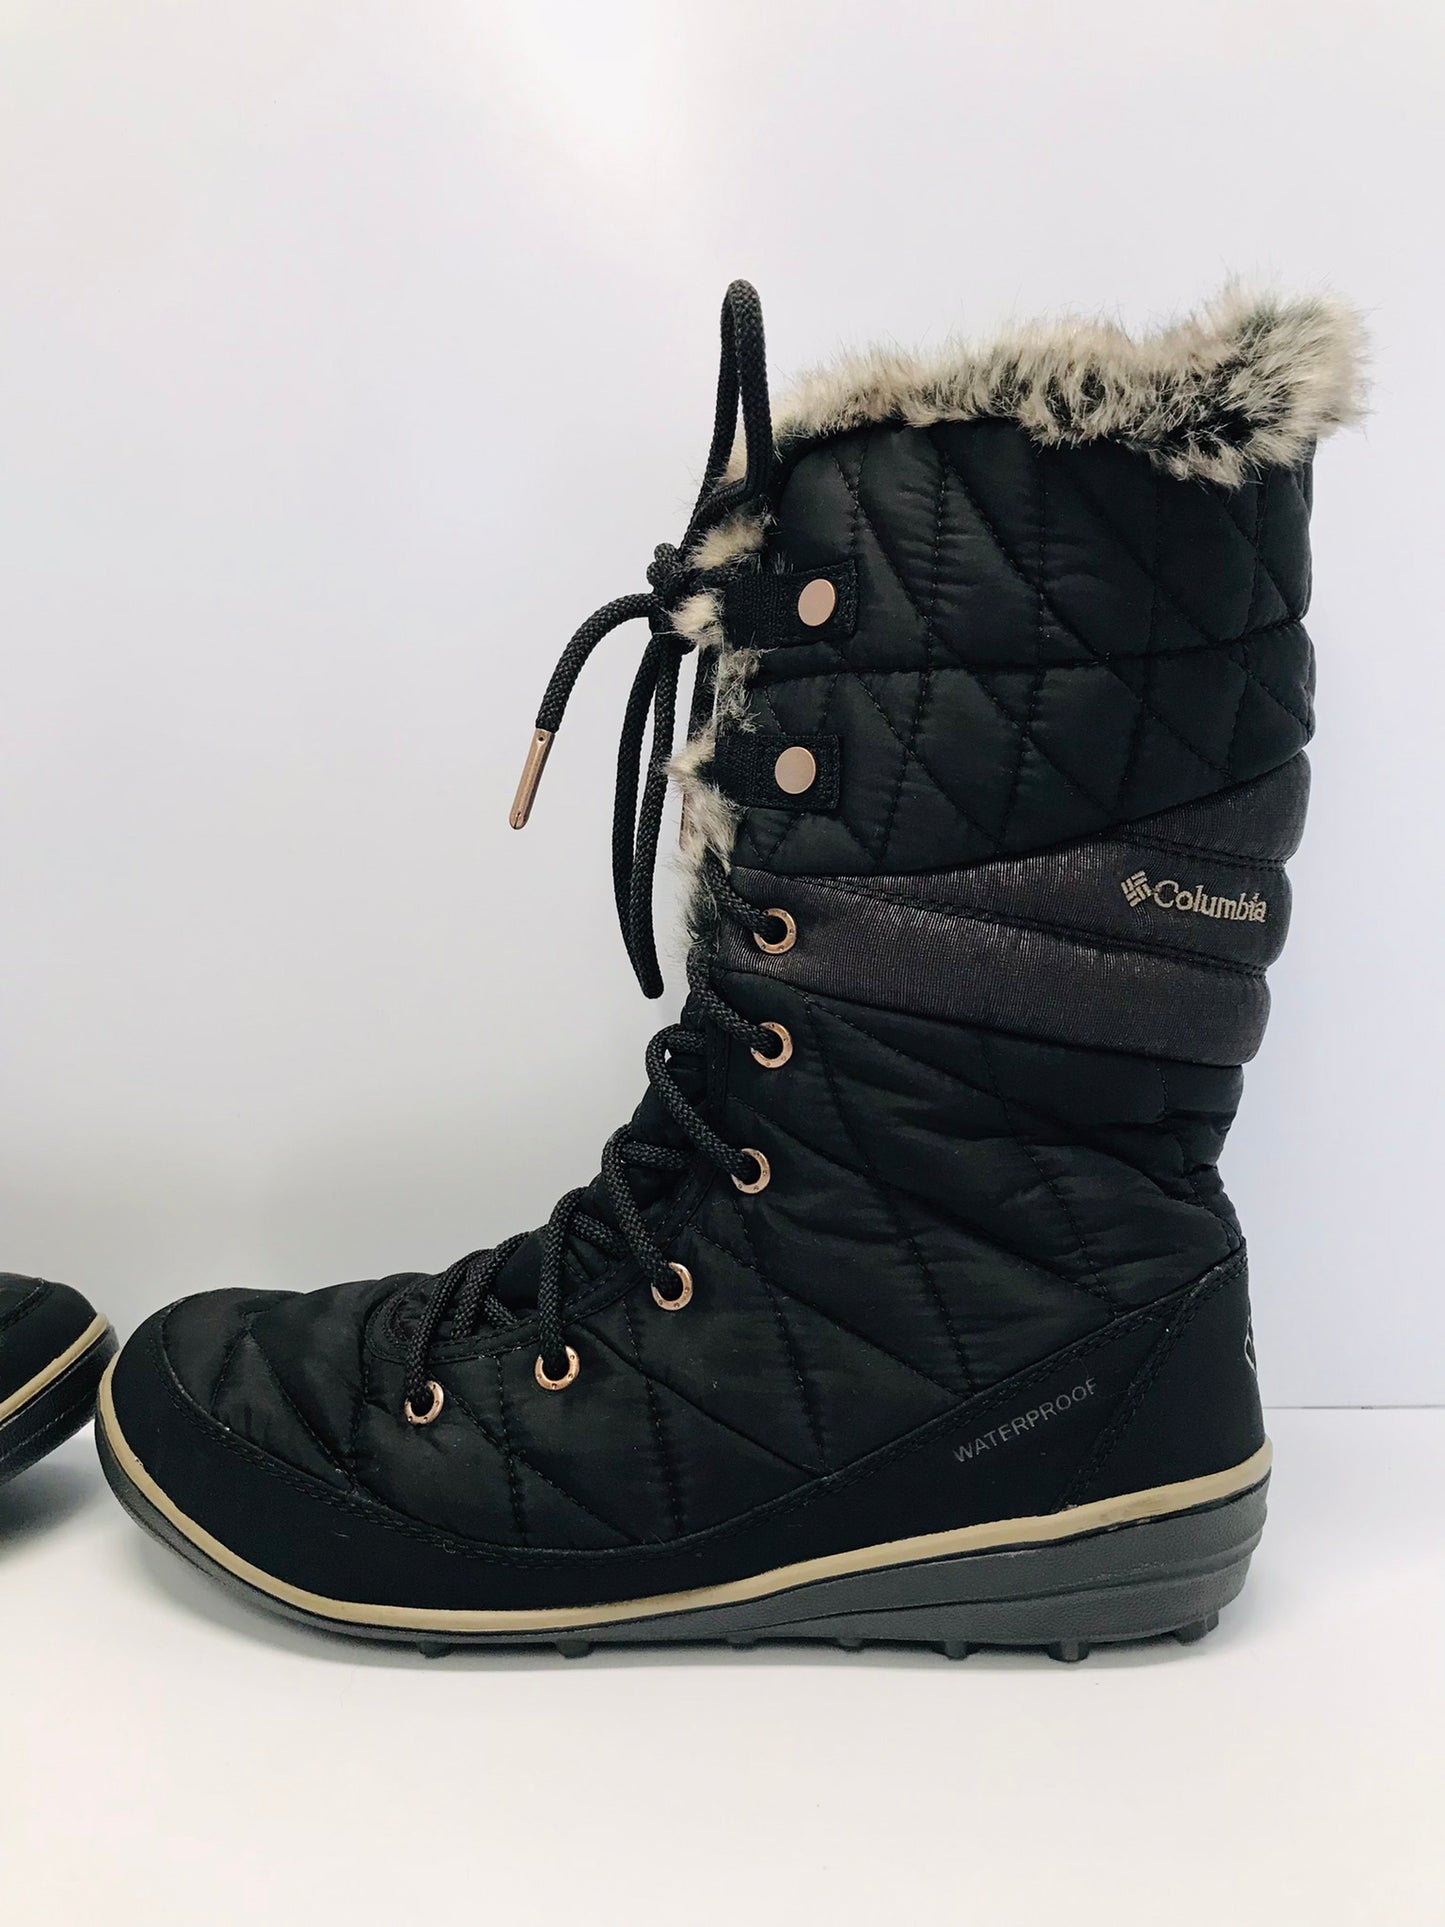 Winter Boots Ladies Size 9.5 Columbia Women's Minx Mid III Waterproof Faux Fur Rubber Soles NEW